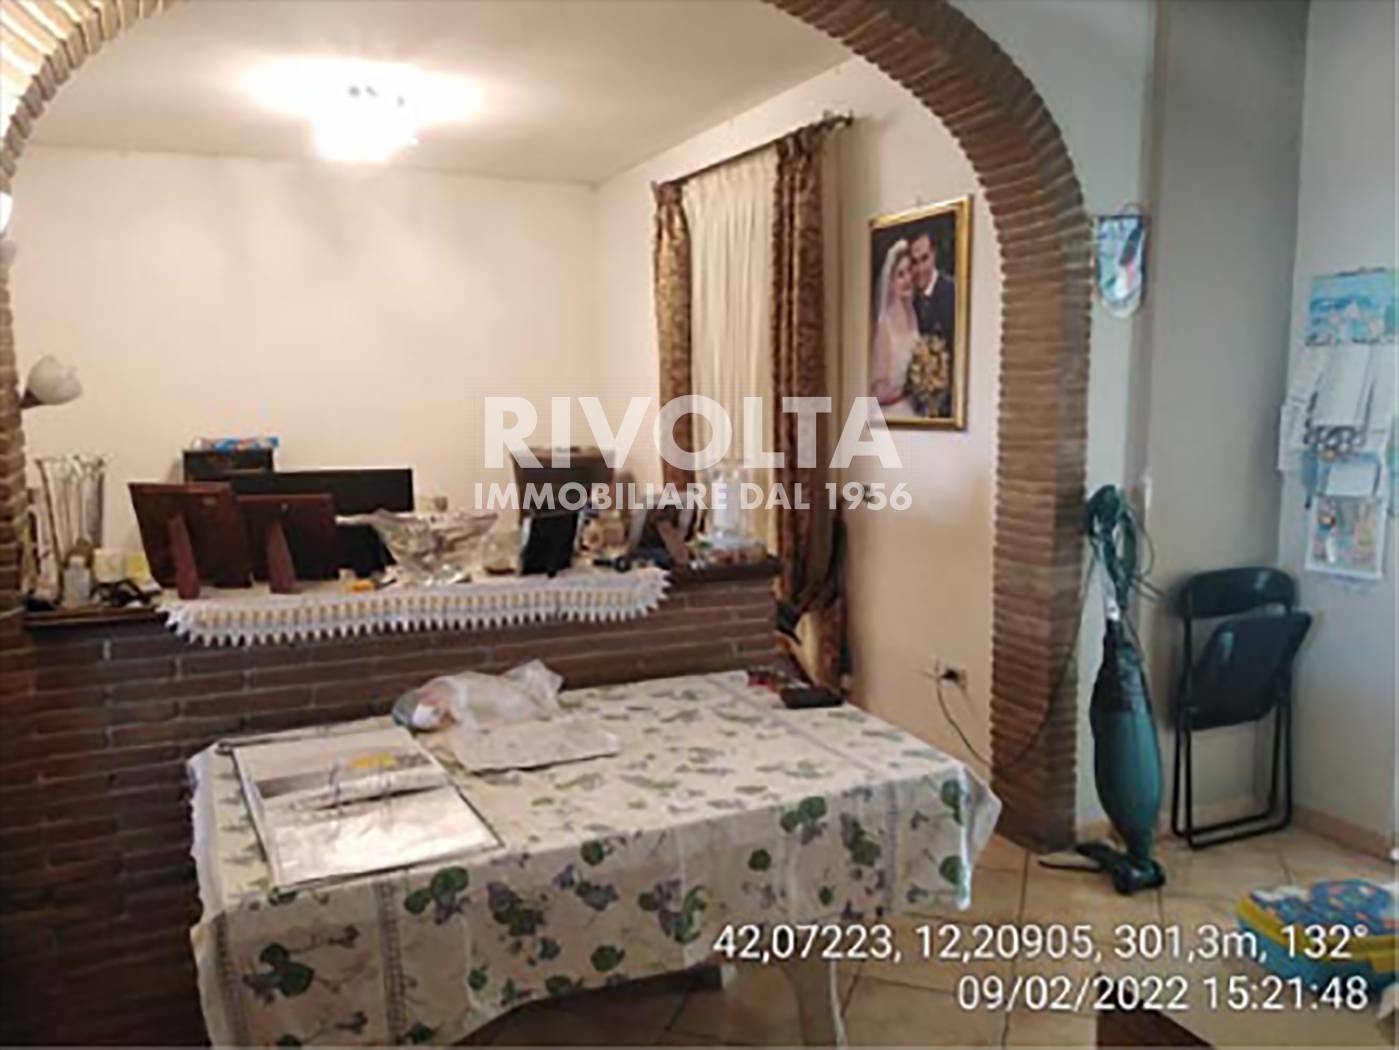 Villa in vendita a Bracciano, 5 locali, prezzo € 102.000 | PortaleAgenzieImmobiliari.it